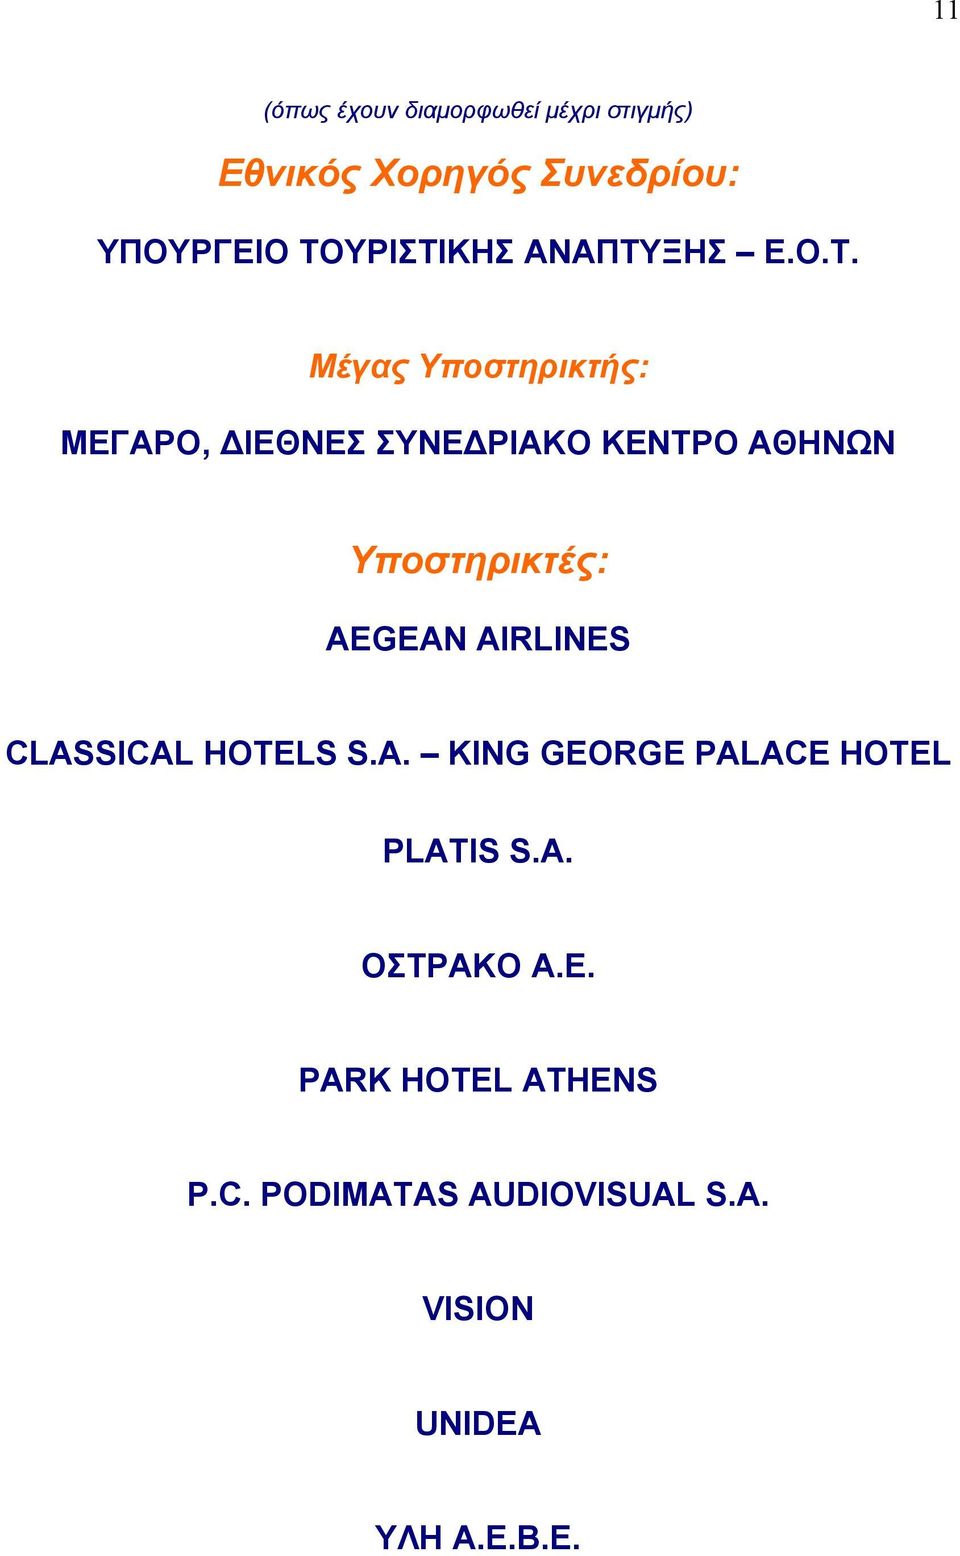 ΑΘΗΝΩΝ Υποστηρικτές: AEGEAN AIRLINES CLASSICAL HOTELS S.A. KING GEORGE PALACE HOTEL PLATIS S.